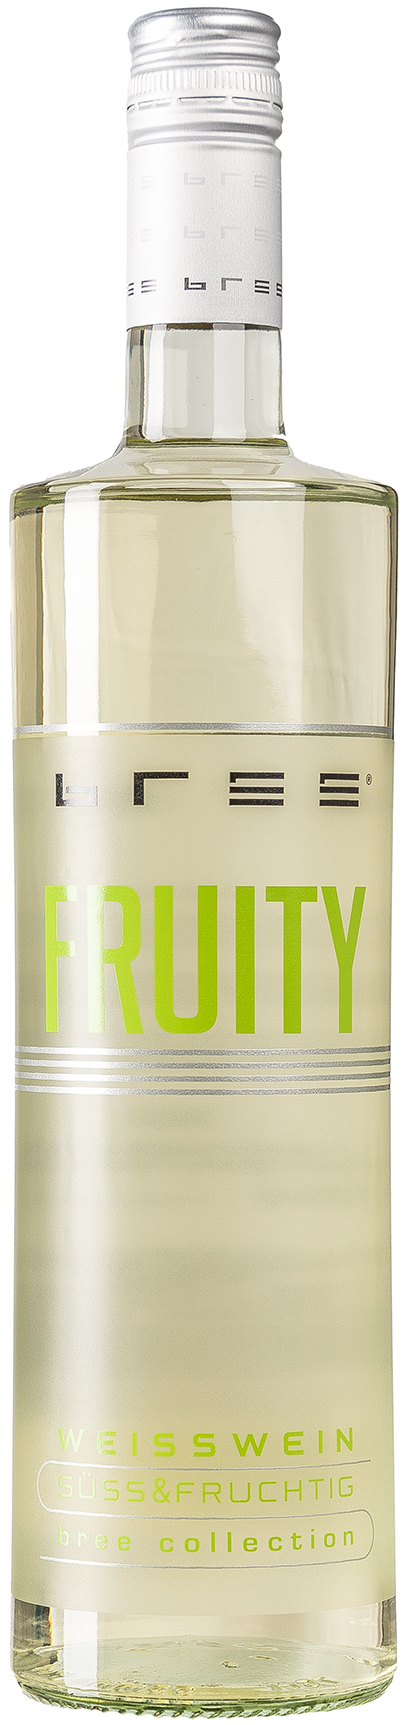 Bree Fruity weiß Süss und Fruchtig 9,0% vol. 0,75L